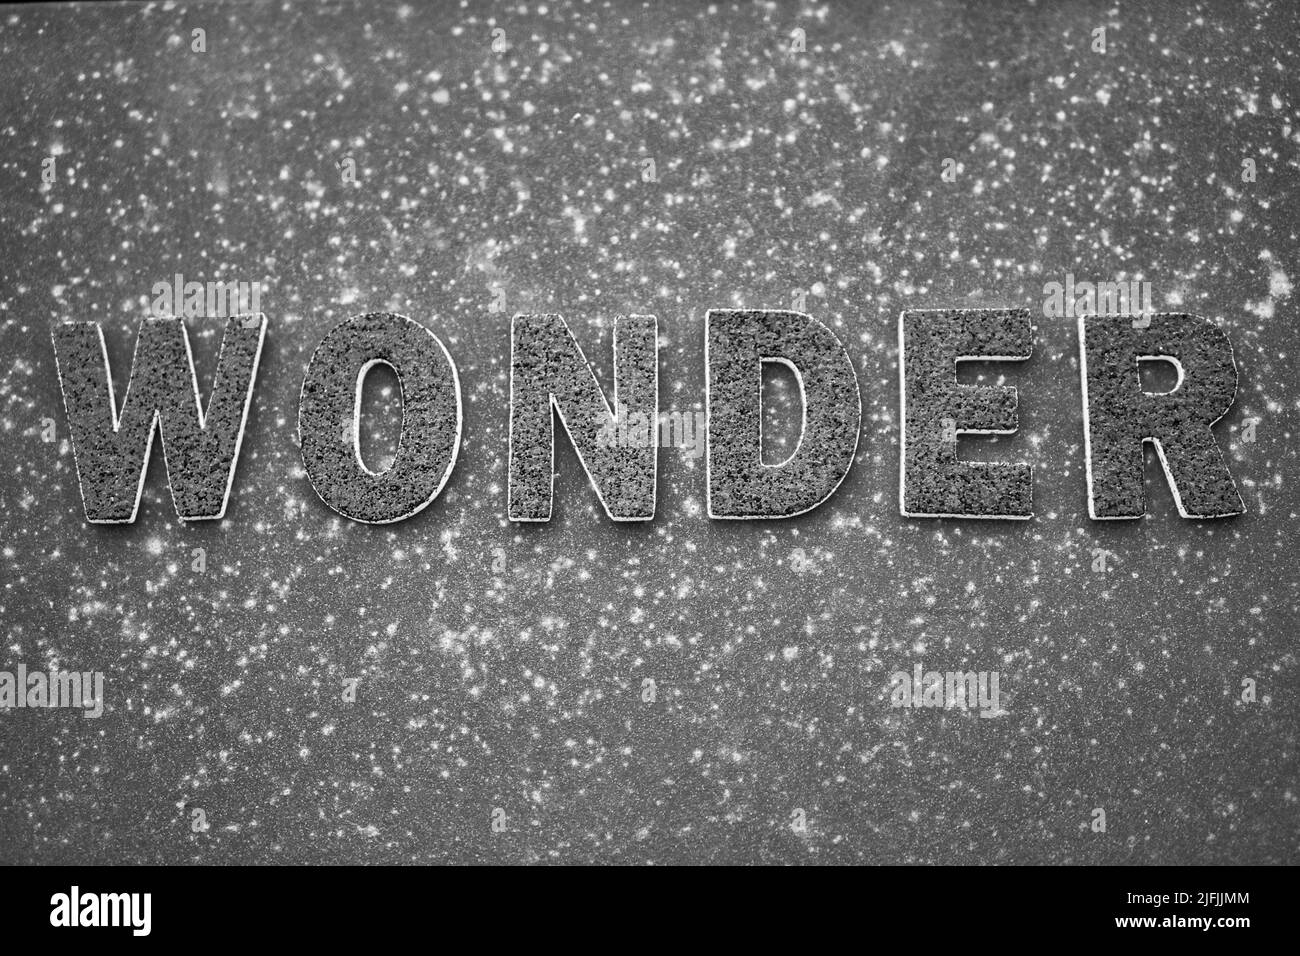 La parola 'Wonder' in lettere nere su una superficie di metallo arrugginita nera. Foto Stock